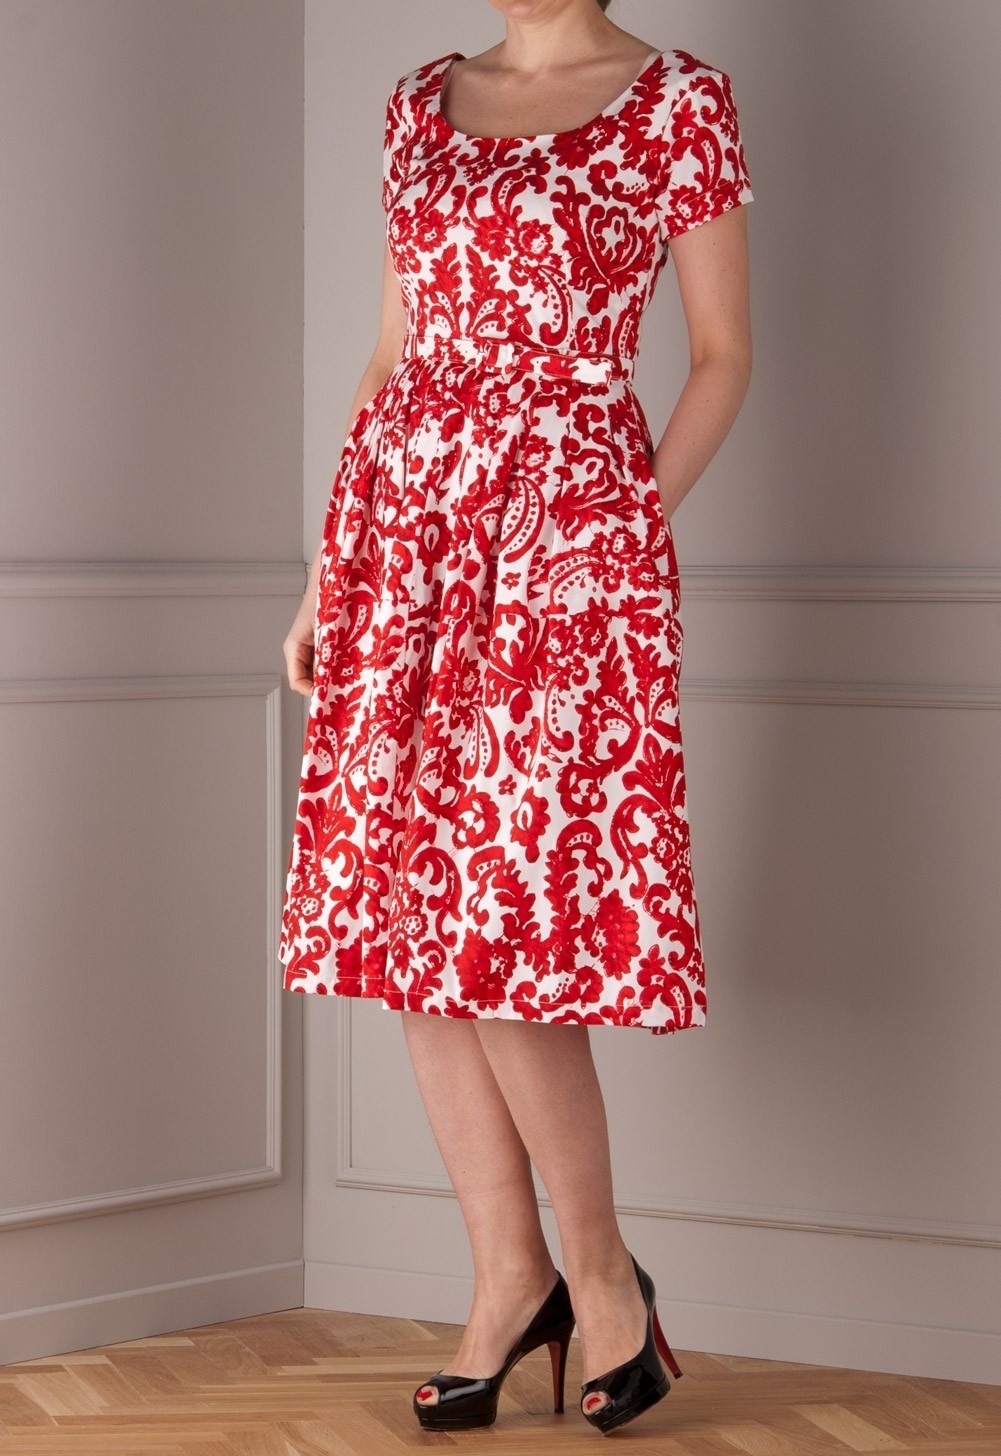 15 Wunderbar Rot Weißes Kleid Bester PreisAbend Top Rot Weißes Kleid Boutique